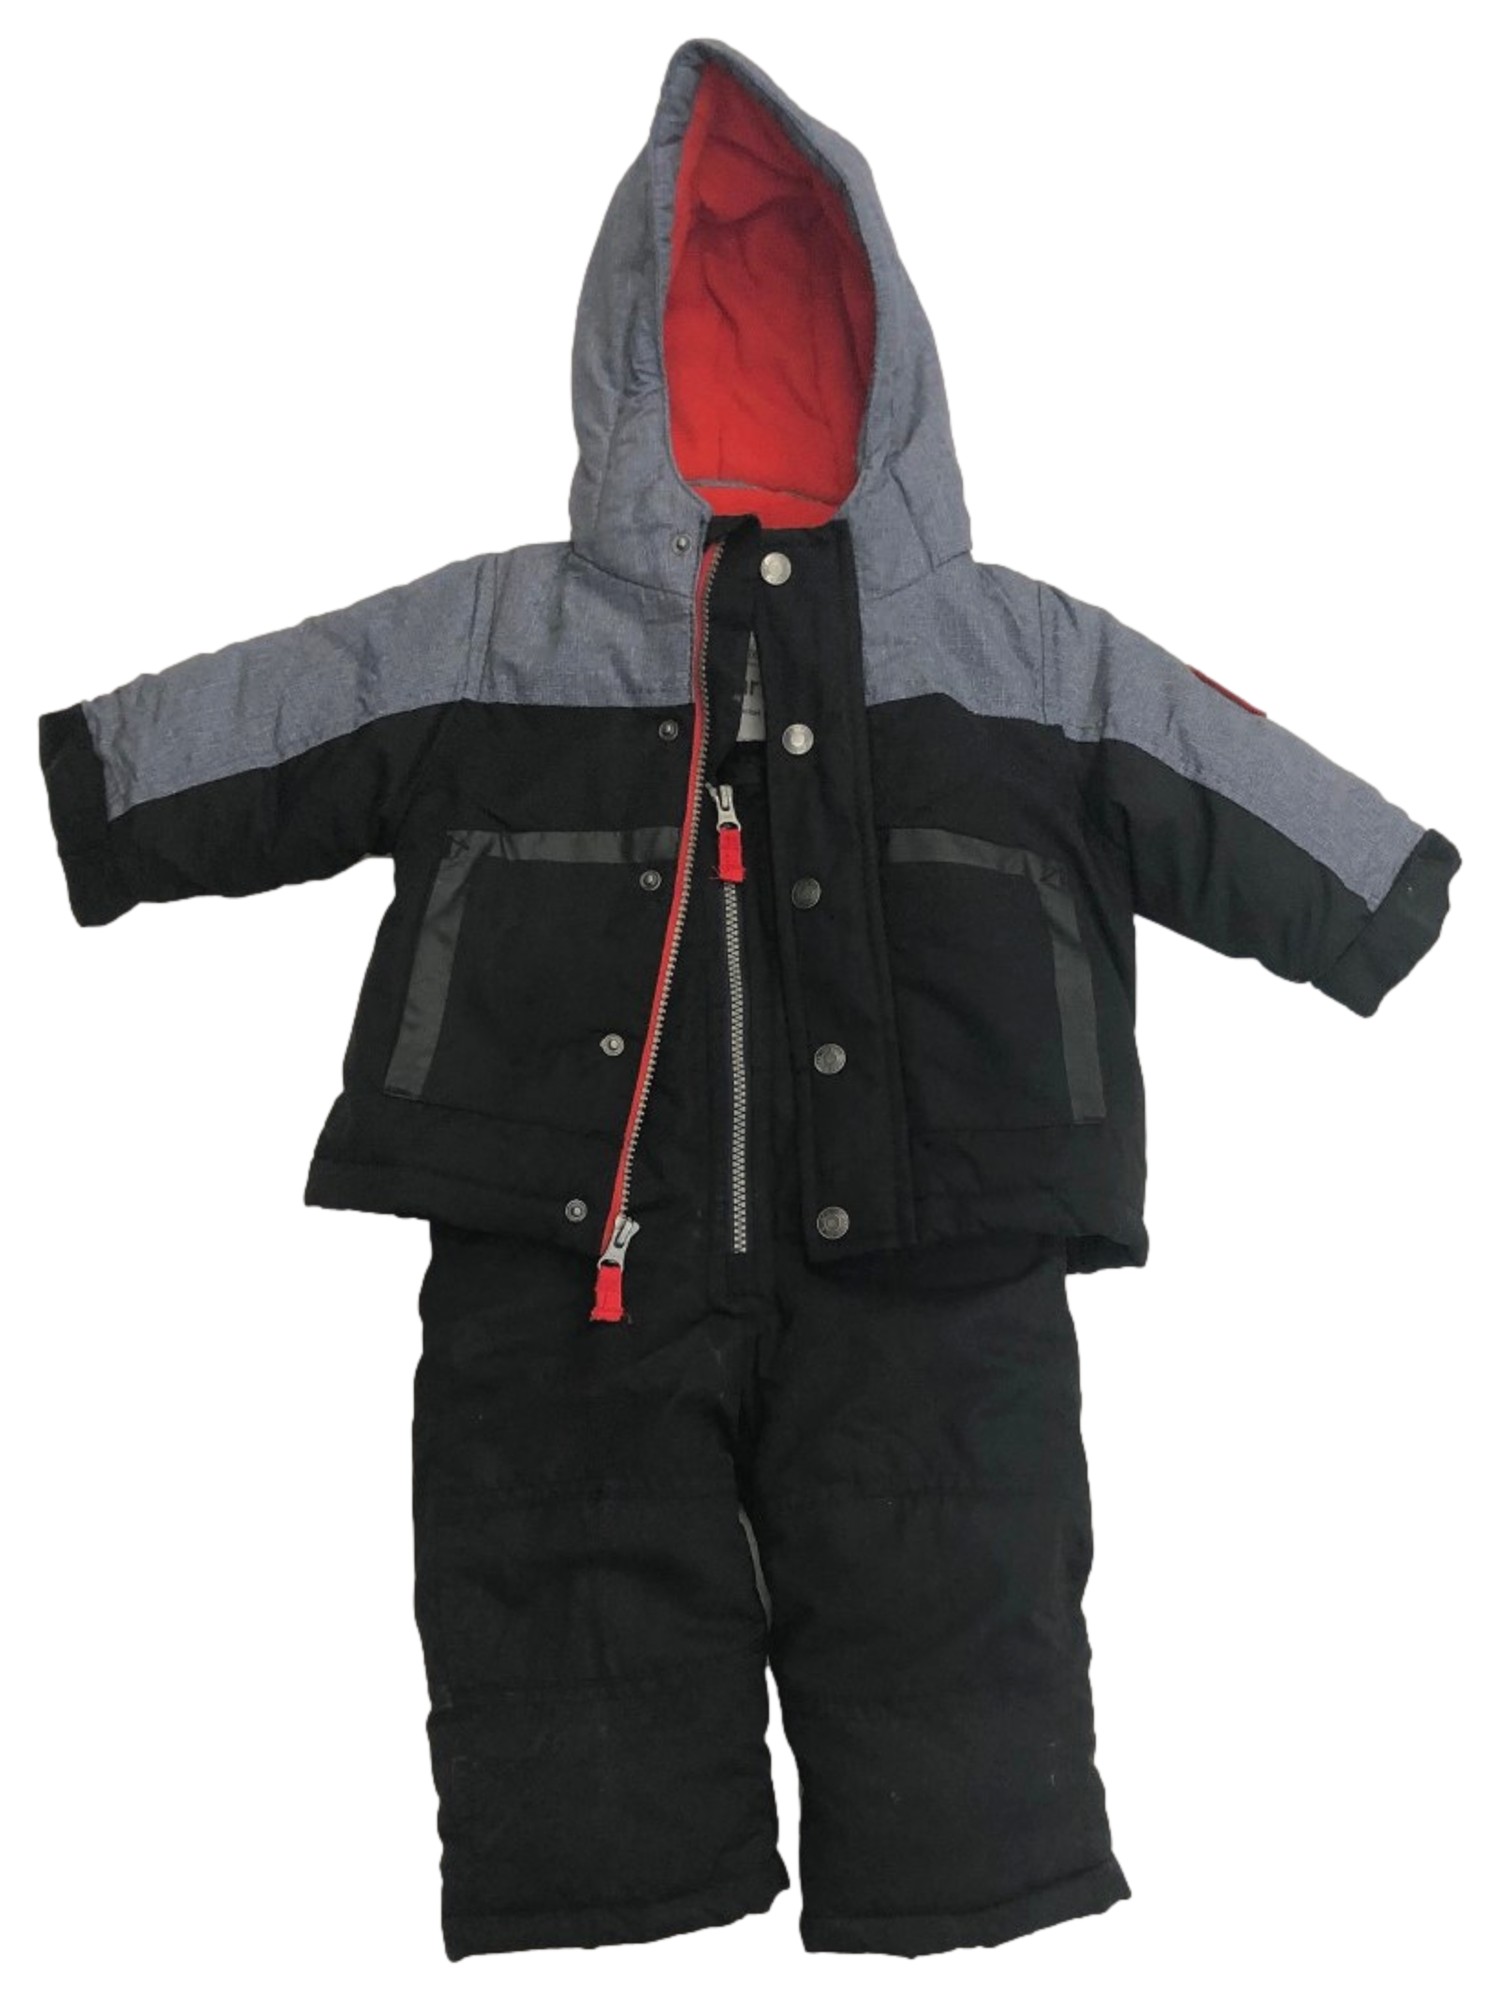 Carter's Carters Infant Boys Black & Gray Snowsuit Coat & Snow Bibs Set 12 Months